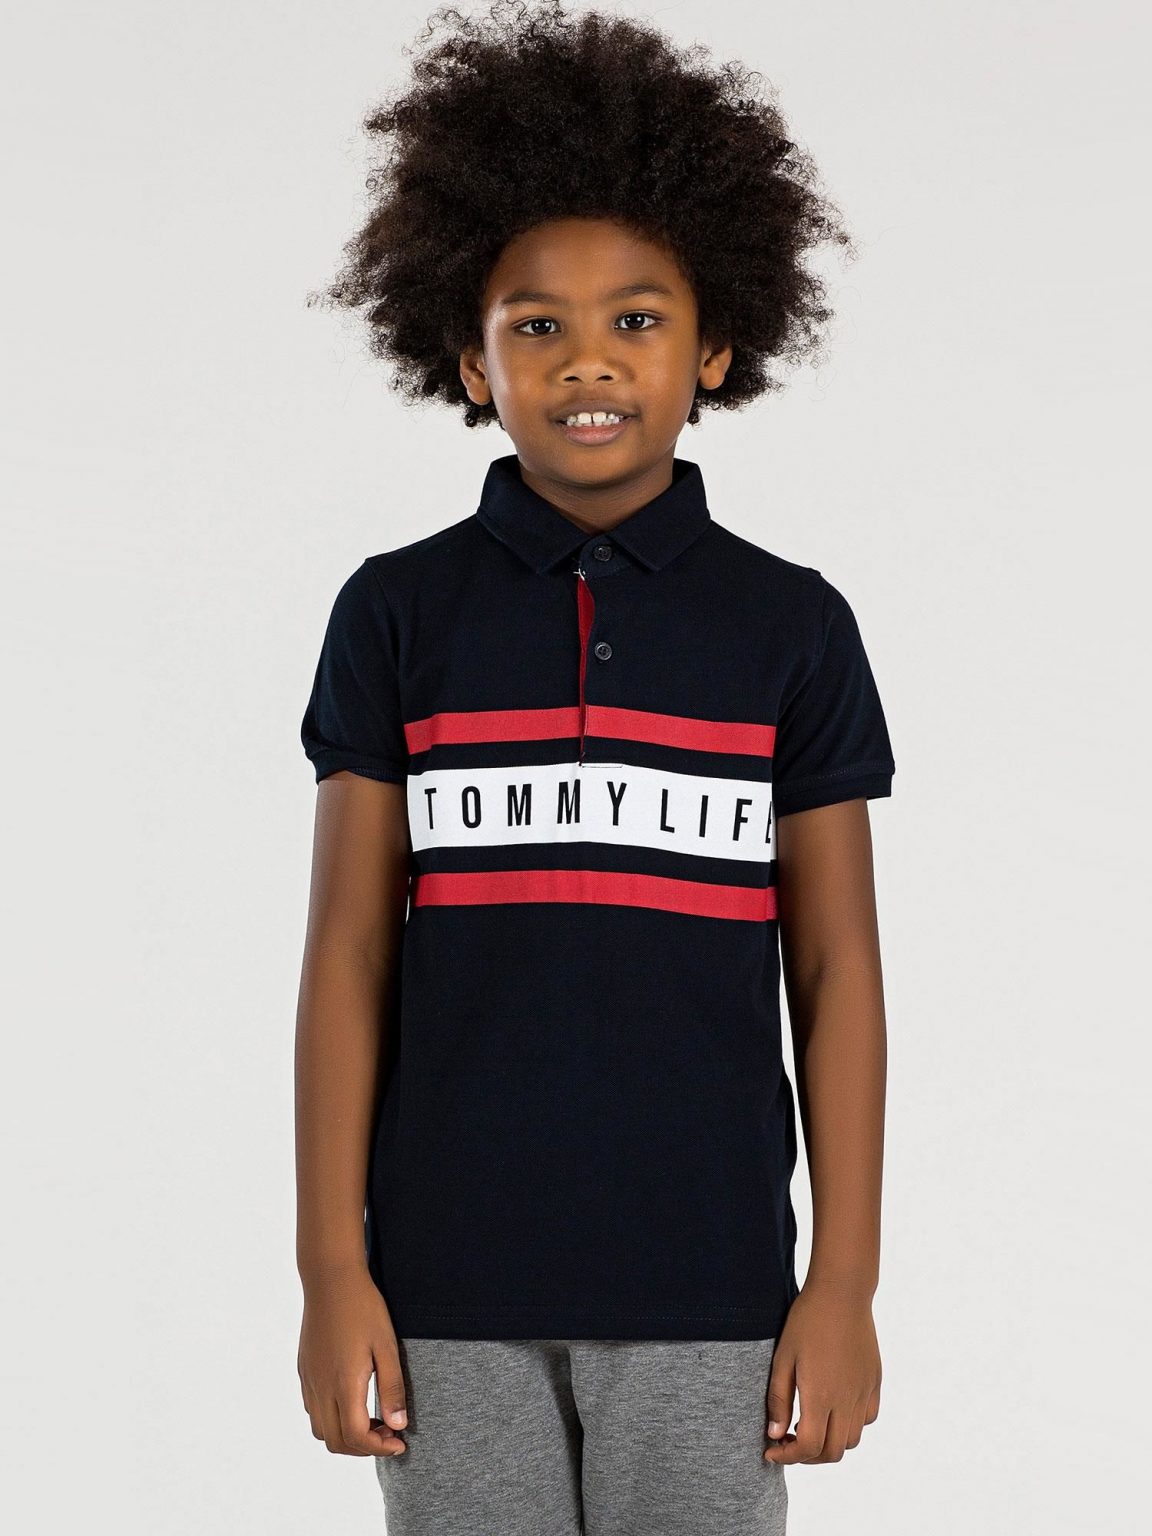 Czarna koszulka polo dla chłopca TOMMY LIFE